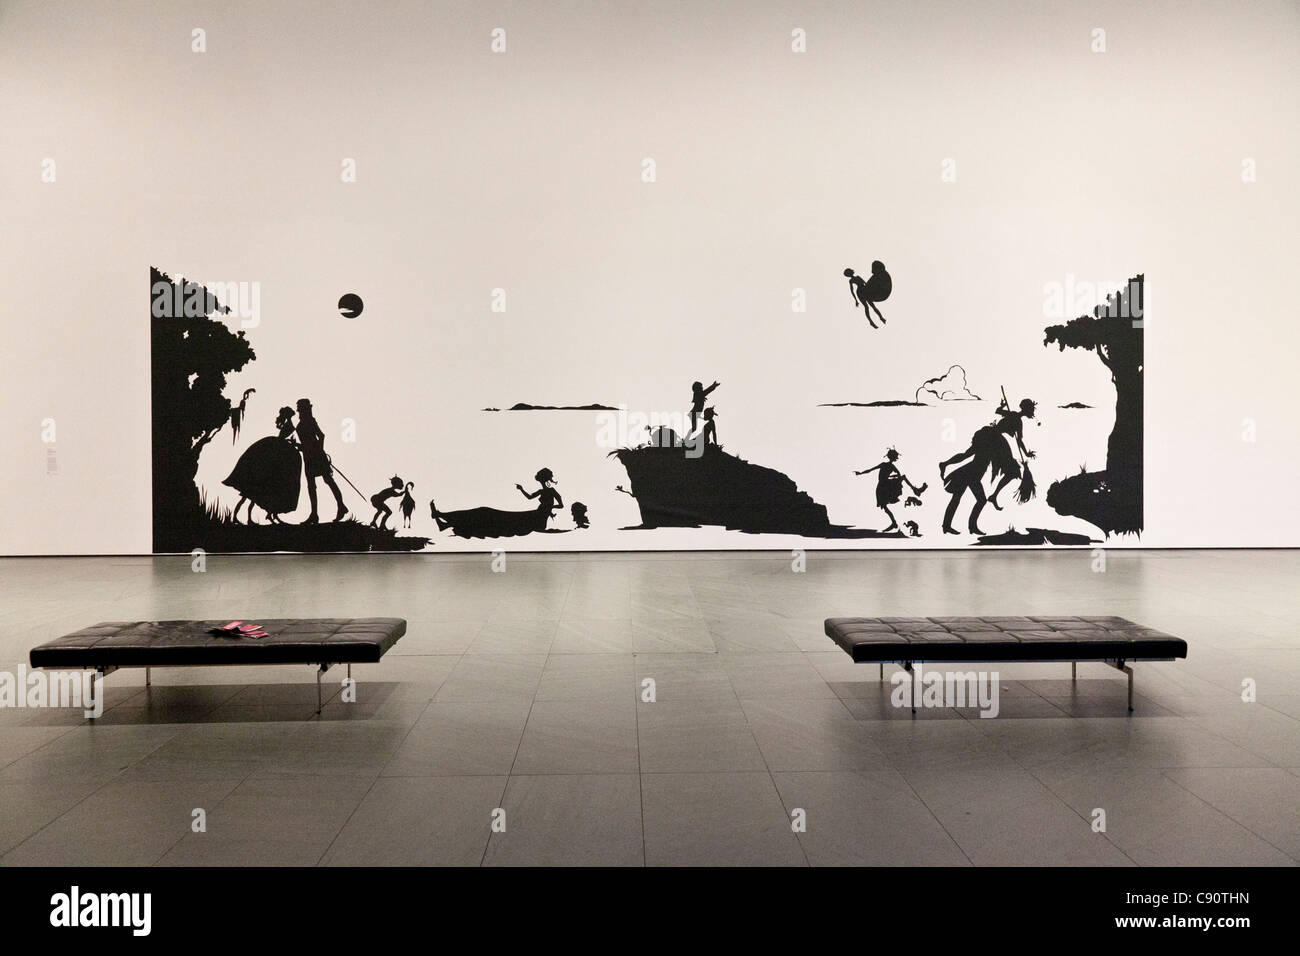 Scherenschnitt Kunst Arbeit Eingangshalle des Museums Bänke Museum of Modern Art MoMa Manhattan New York City Vereinigte Staaten von amerik. Stockfoto